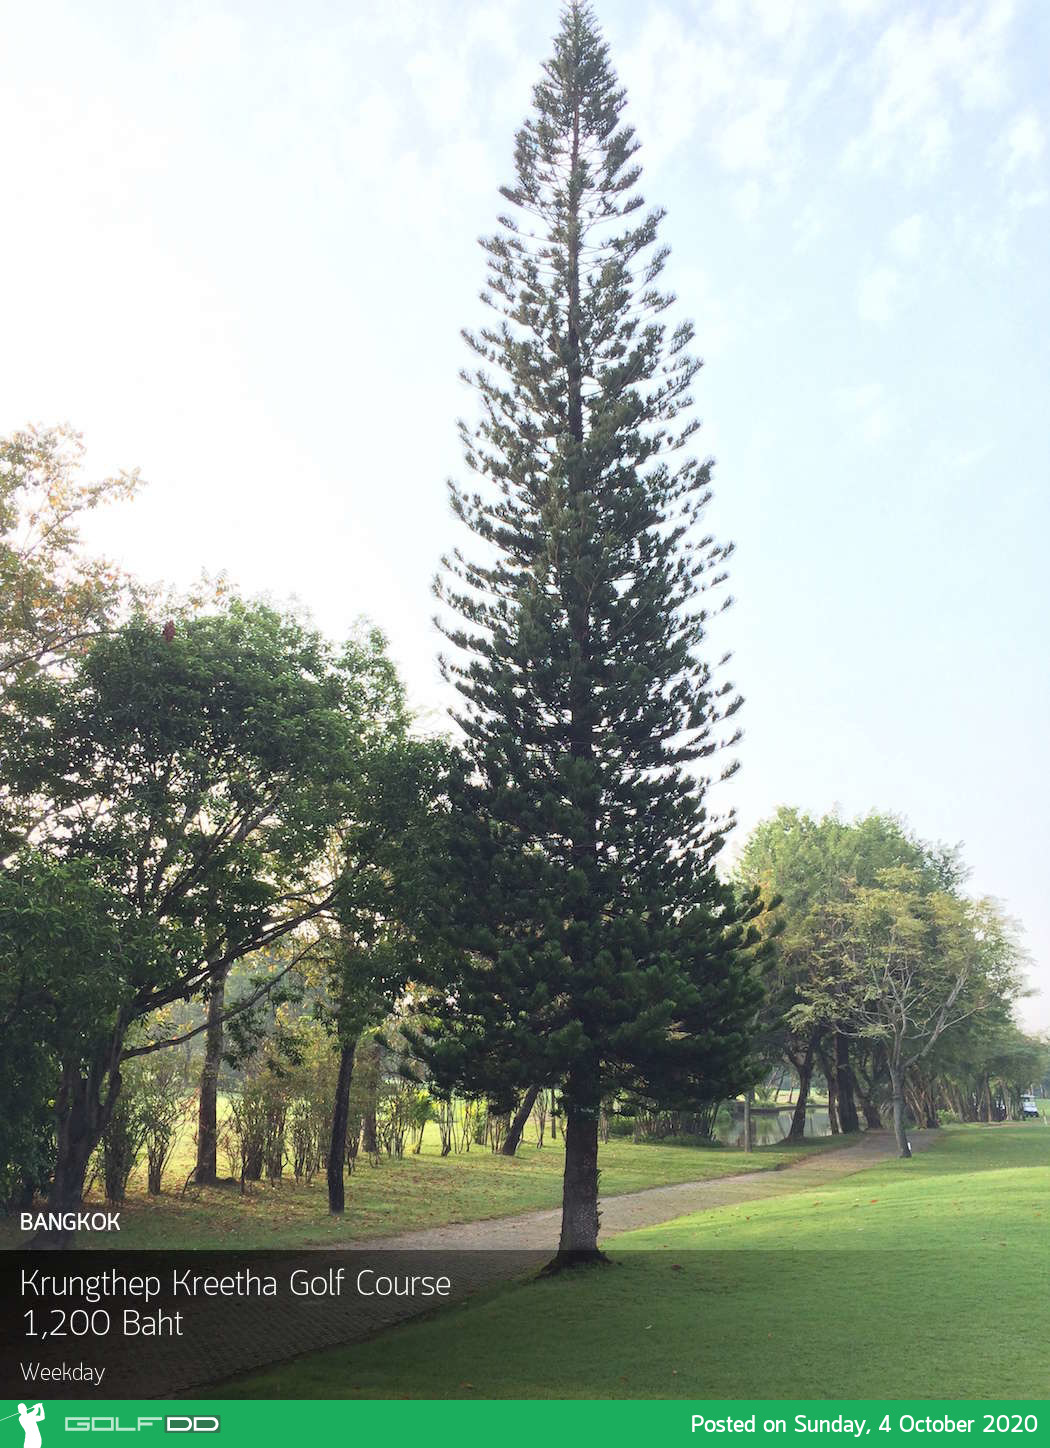 สนามดีประจำจังหวัดกรุงเทพคอกอล์ฟห้ามพลาดสนามสวยๆวิวดีขนาดนี้ ต้อง  Krungthep Kreetha Golf Course สักครั้งในชีวิตต้องลอง 